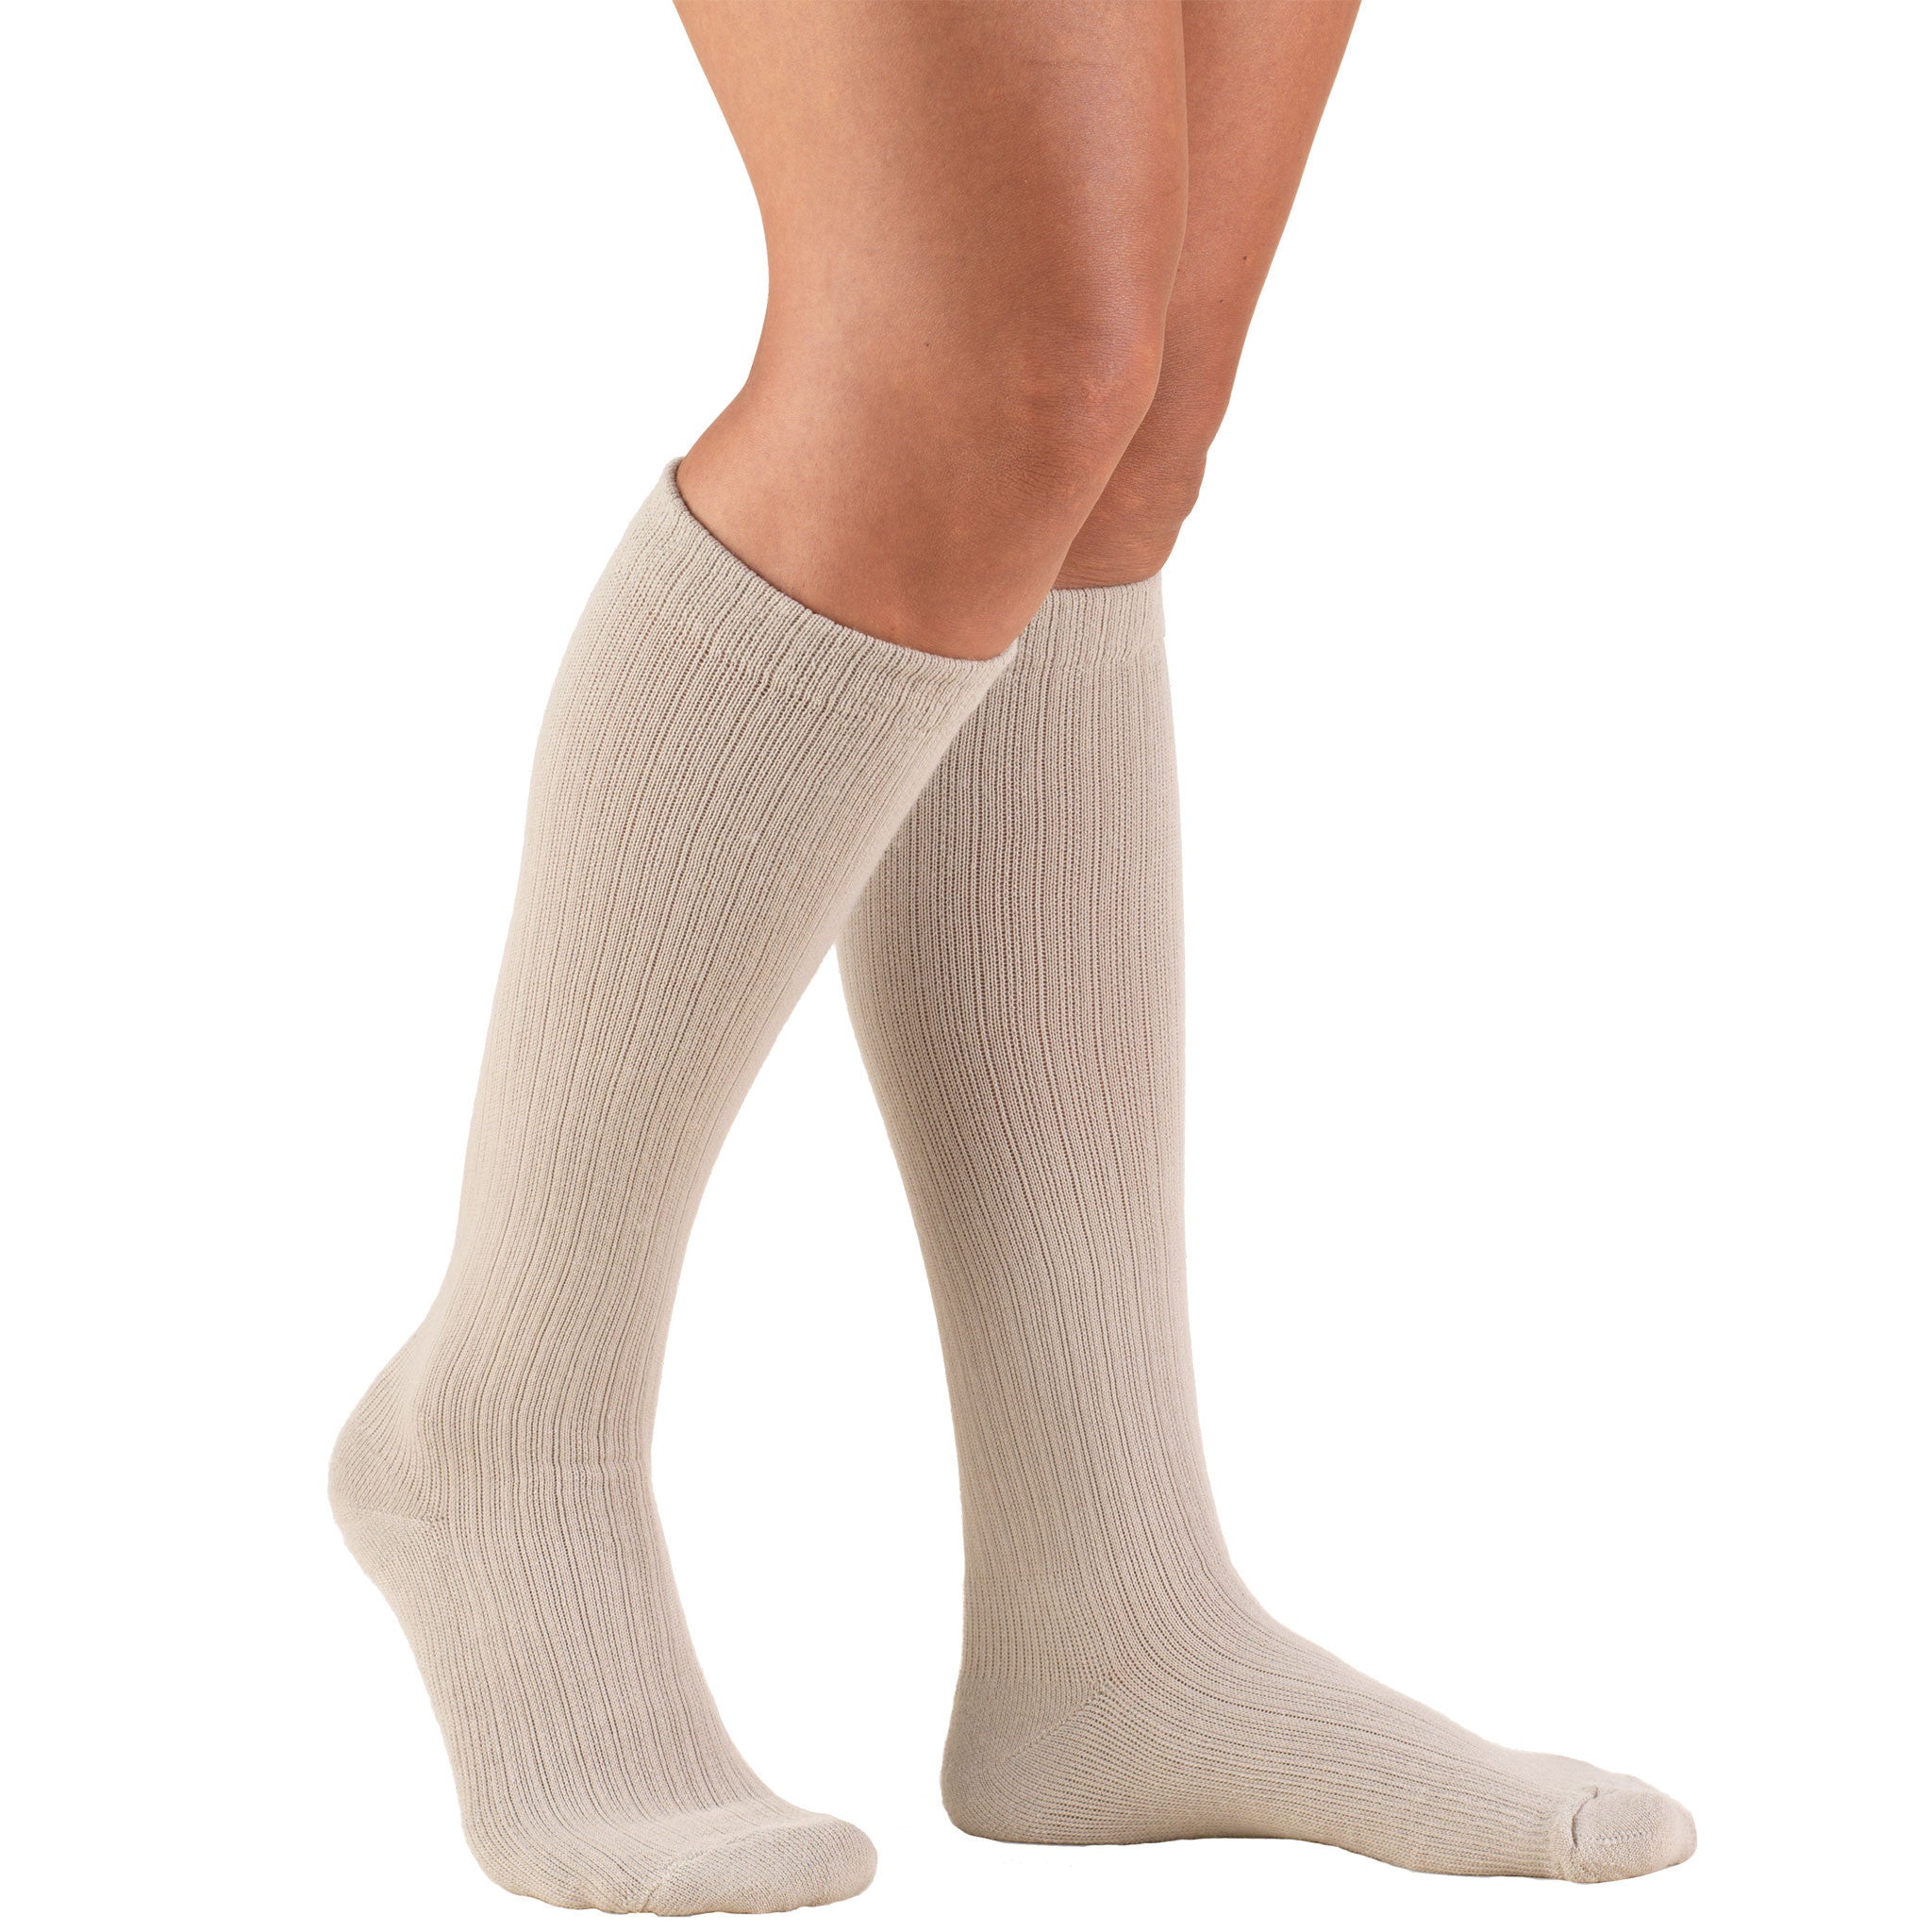 Truform 1963 Ladies Compression Socks 15-20 mmHg - Tan –